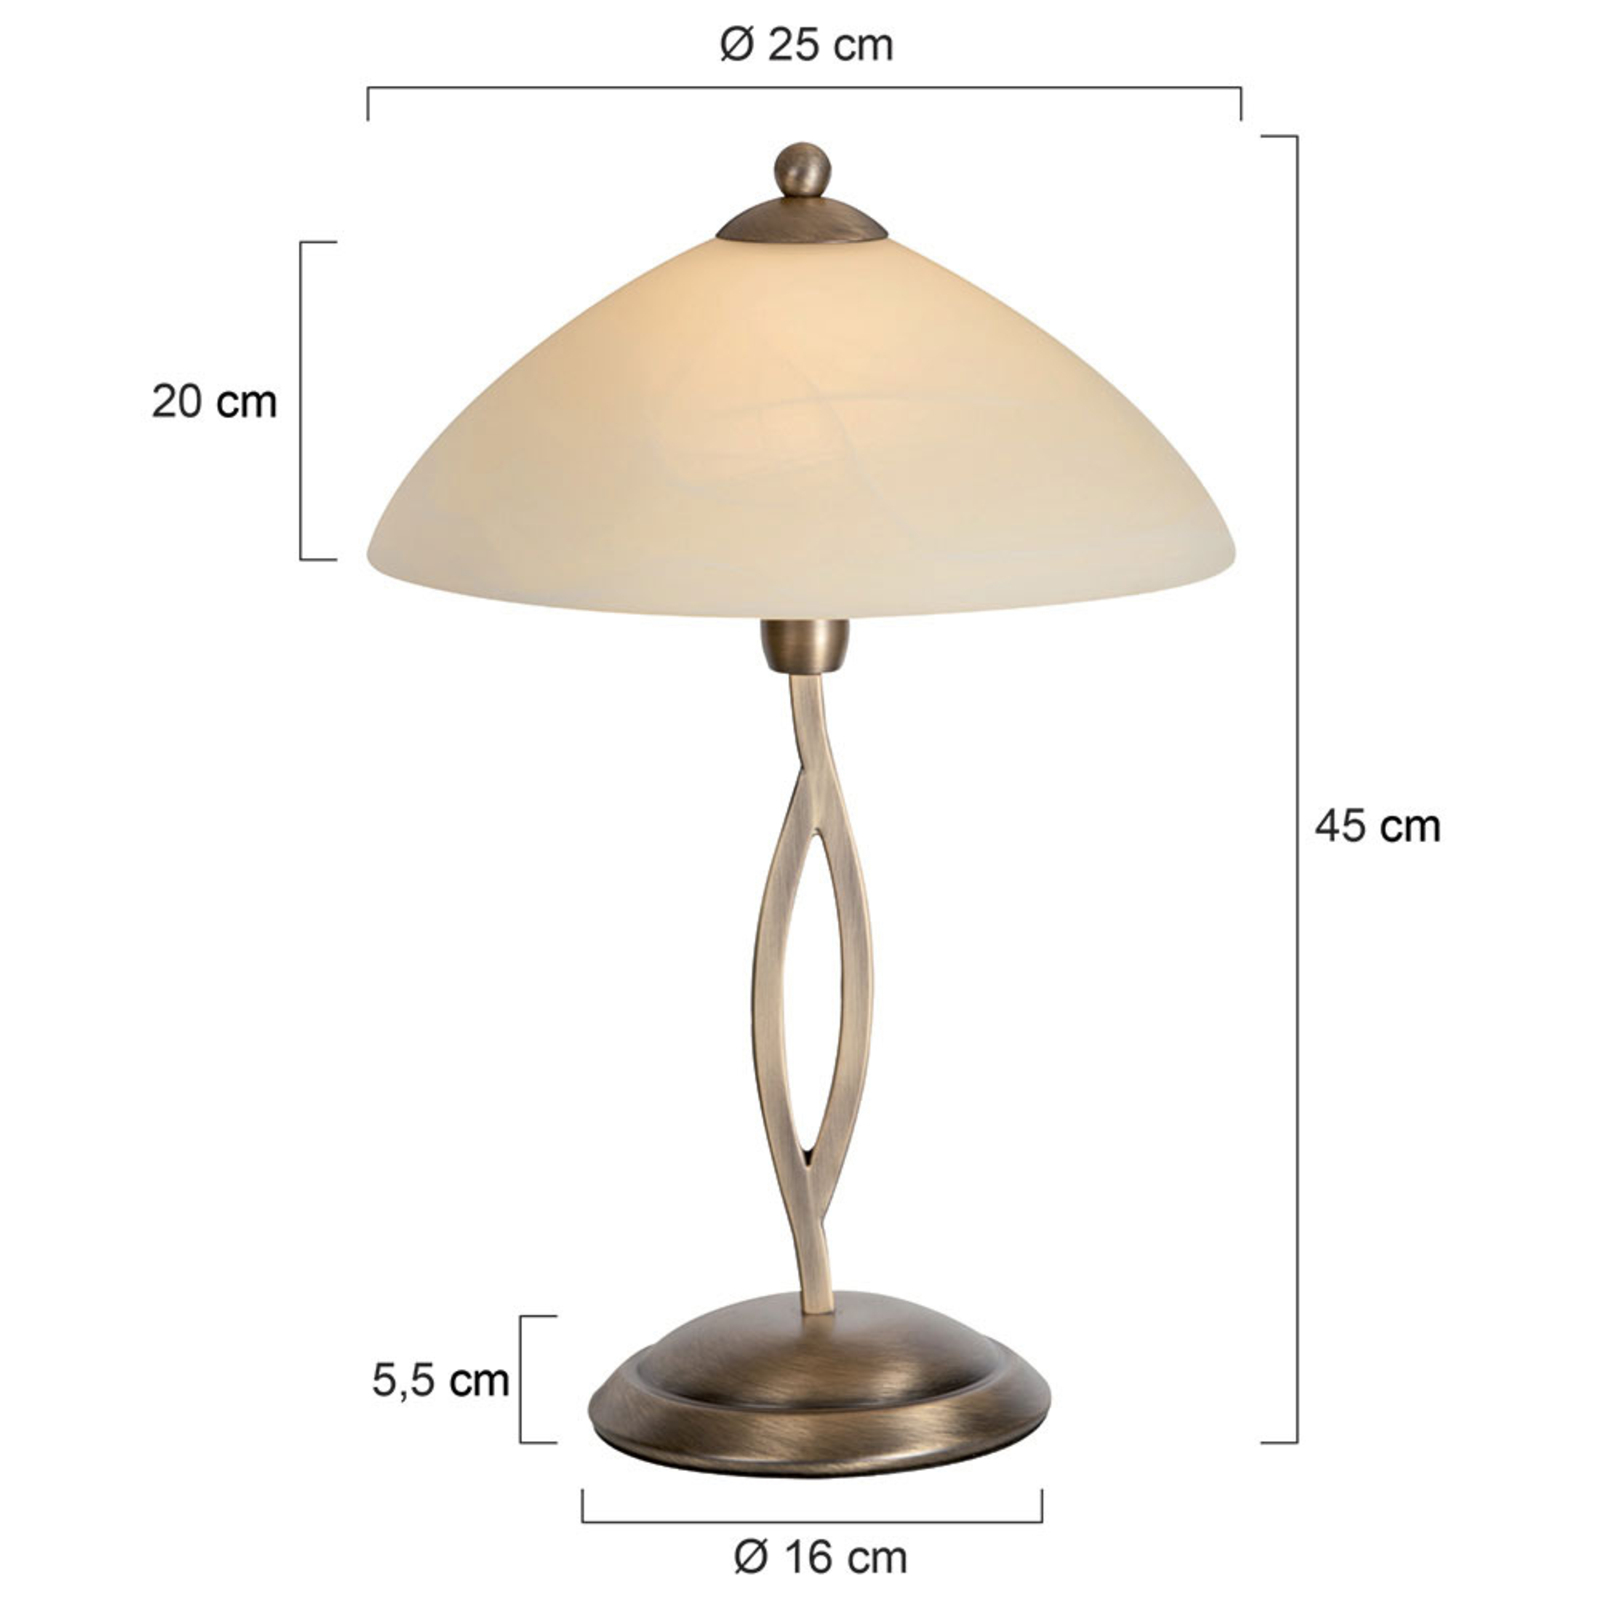 Настолна лампа Capri с височина 45 cm, цвят крем/бронз